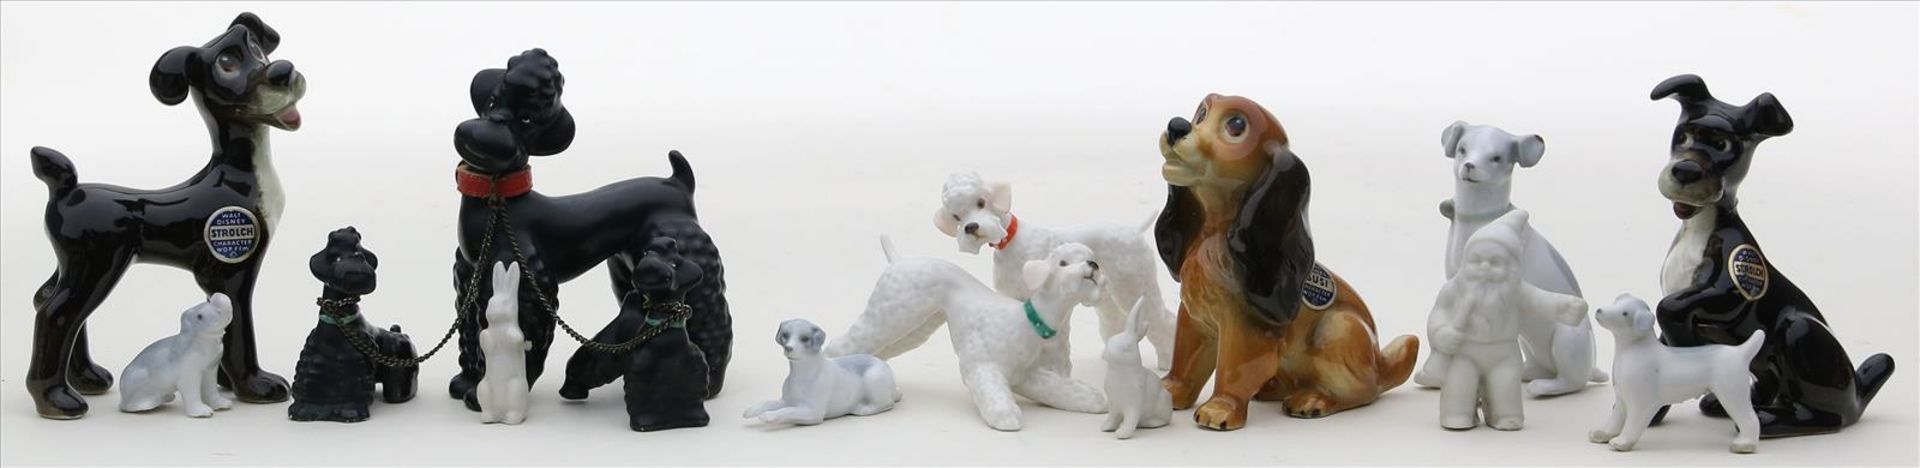 15 kleine Skulpturen.Porzellan/Keramik. Überwiegend Hunde, 12x bunt bemalt. Dabei Goebel und